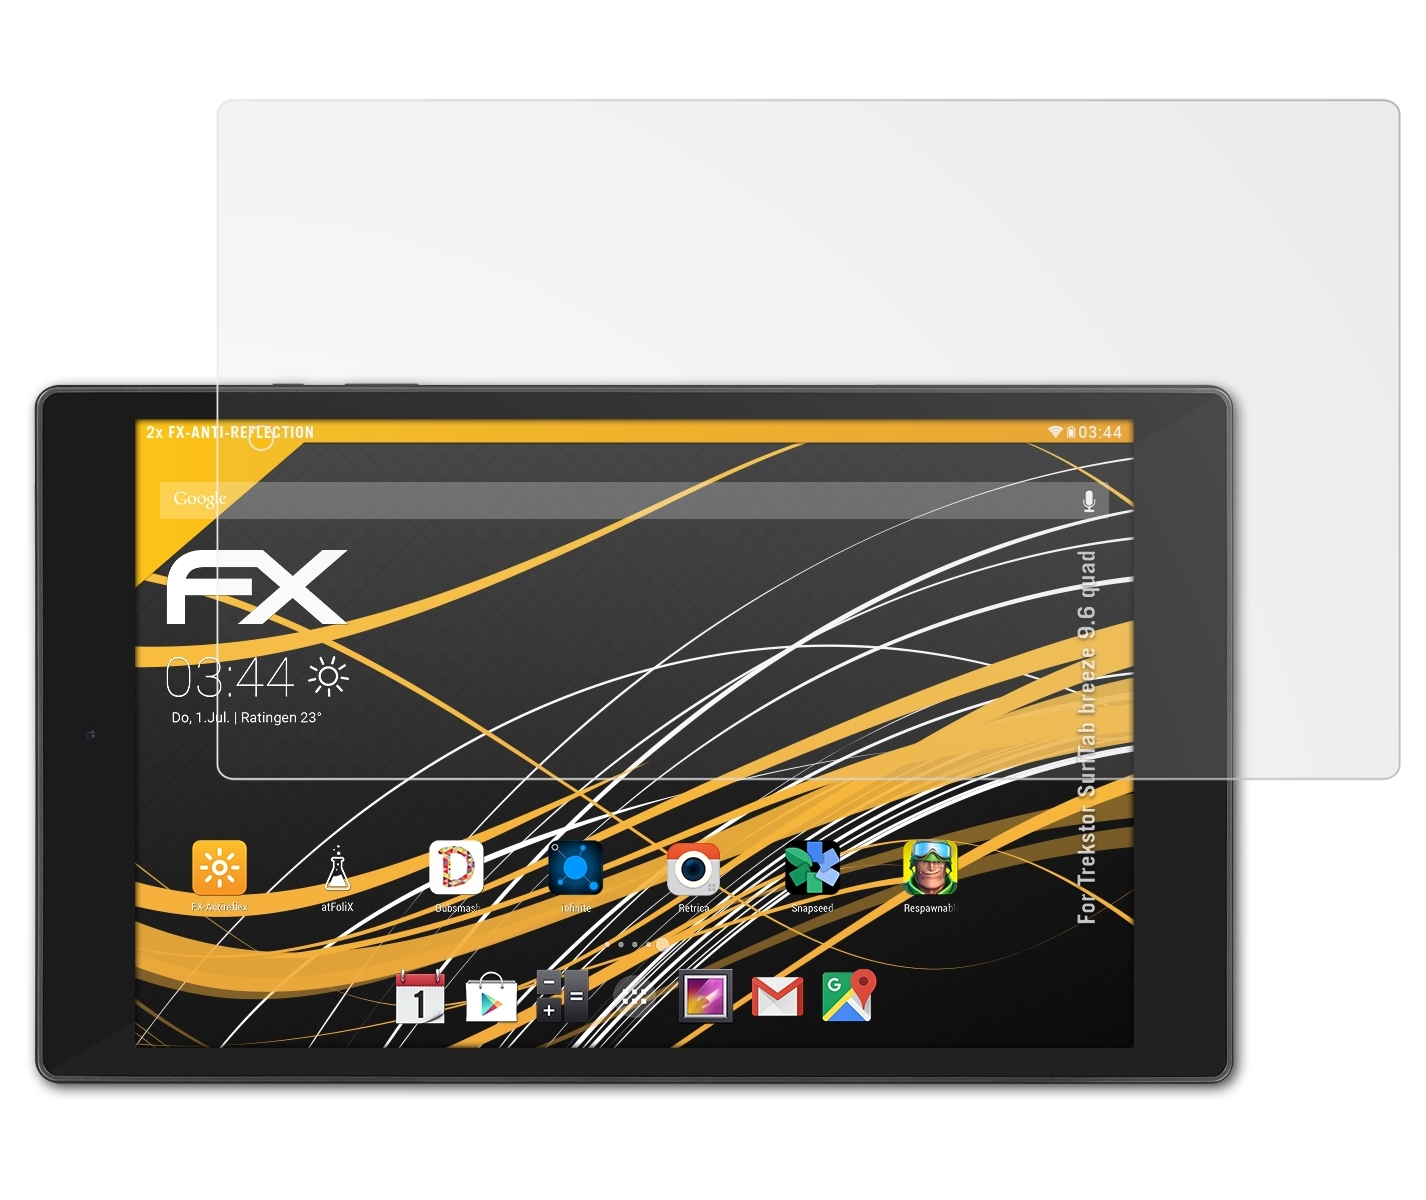 Trekstor ATFOLIX breeze quad) 2x Displayschutz(für SurfTab FX-Antireflex 9.6